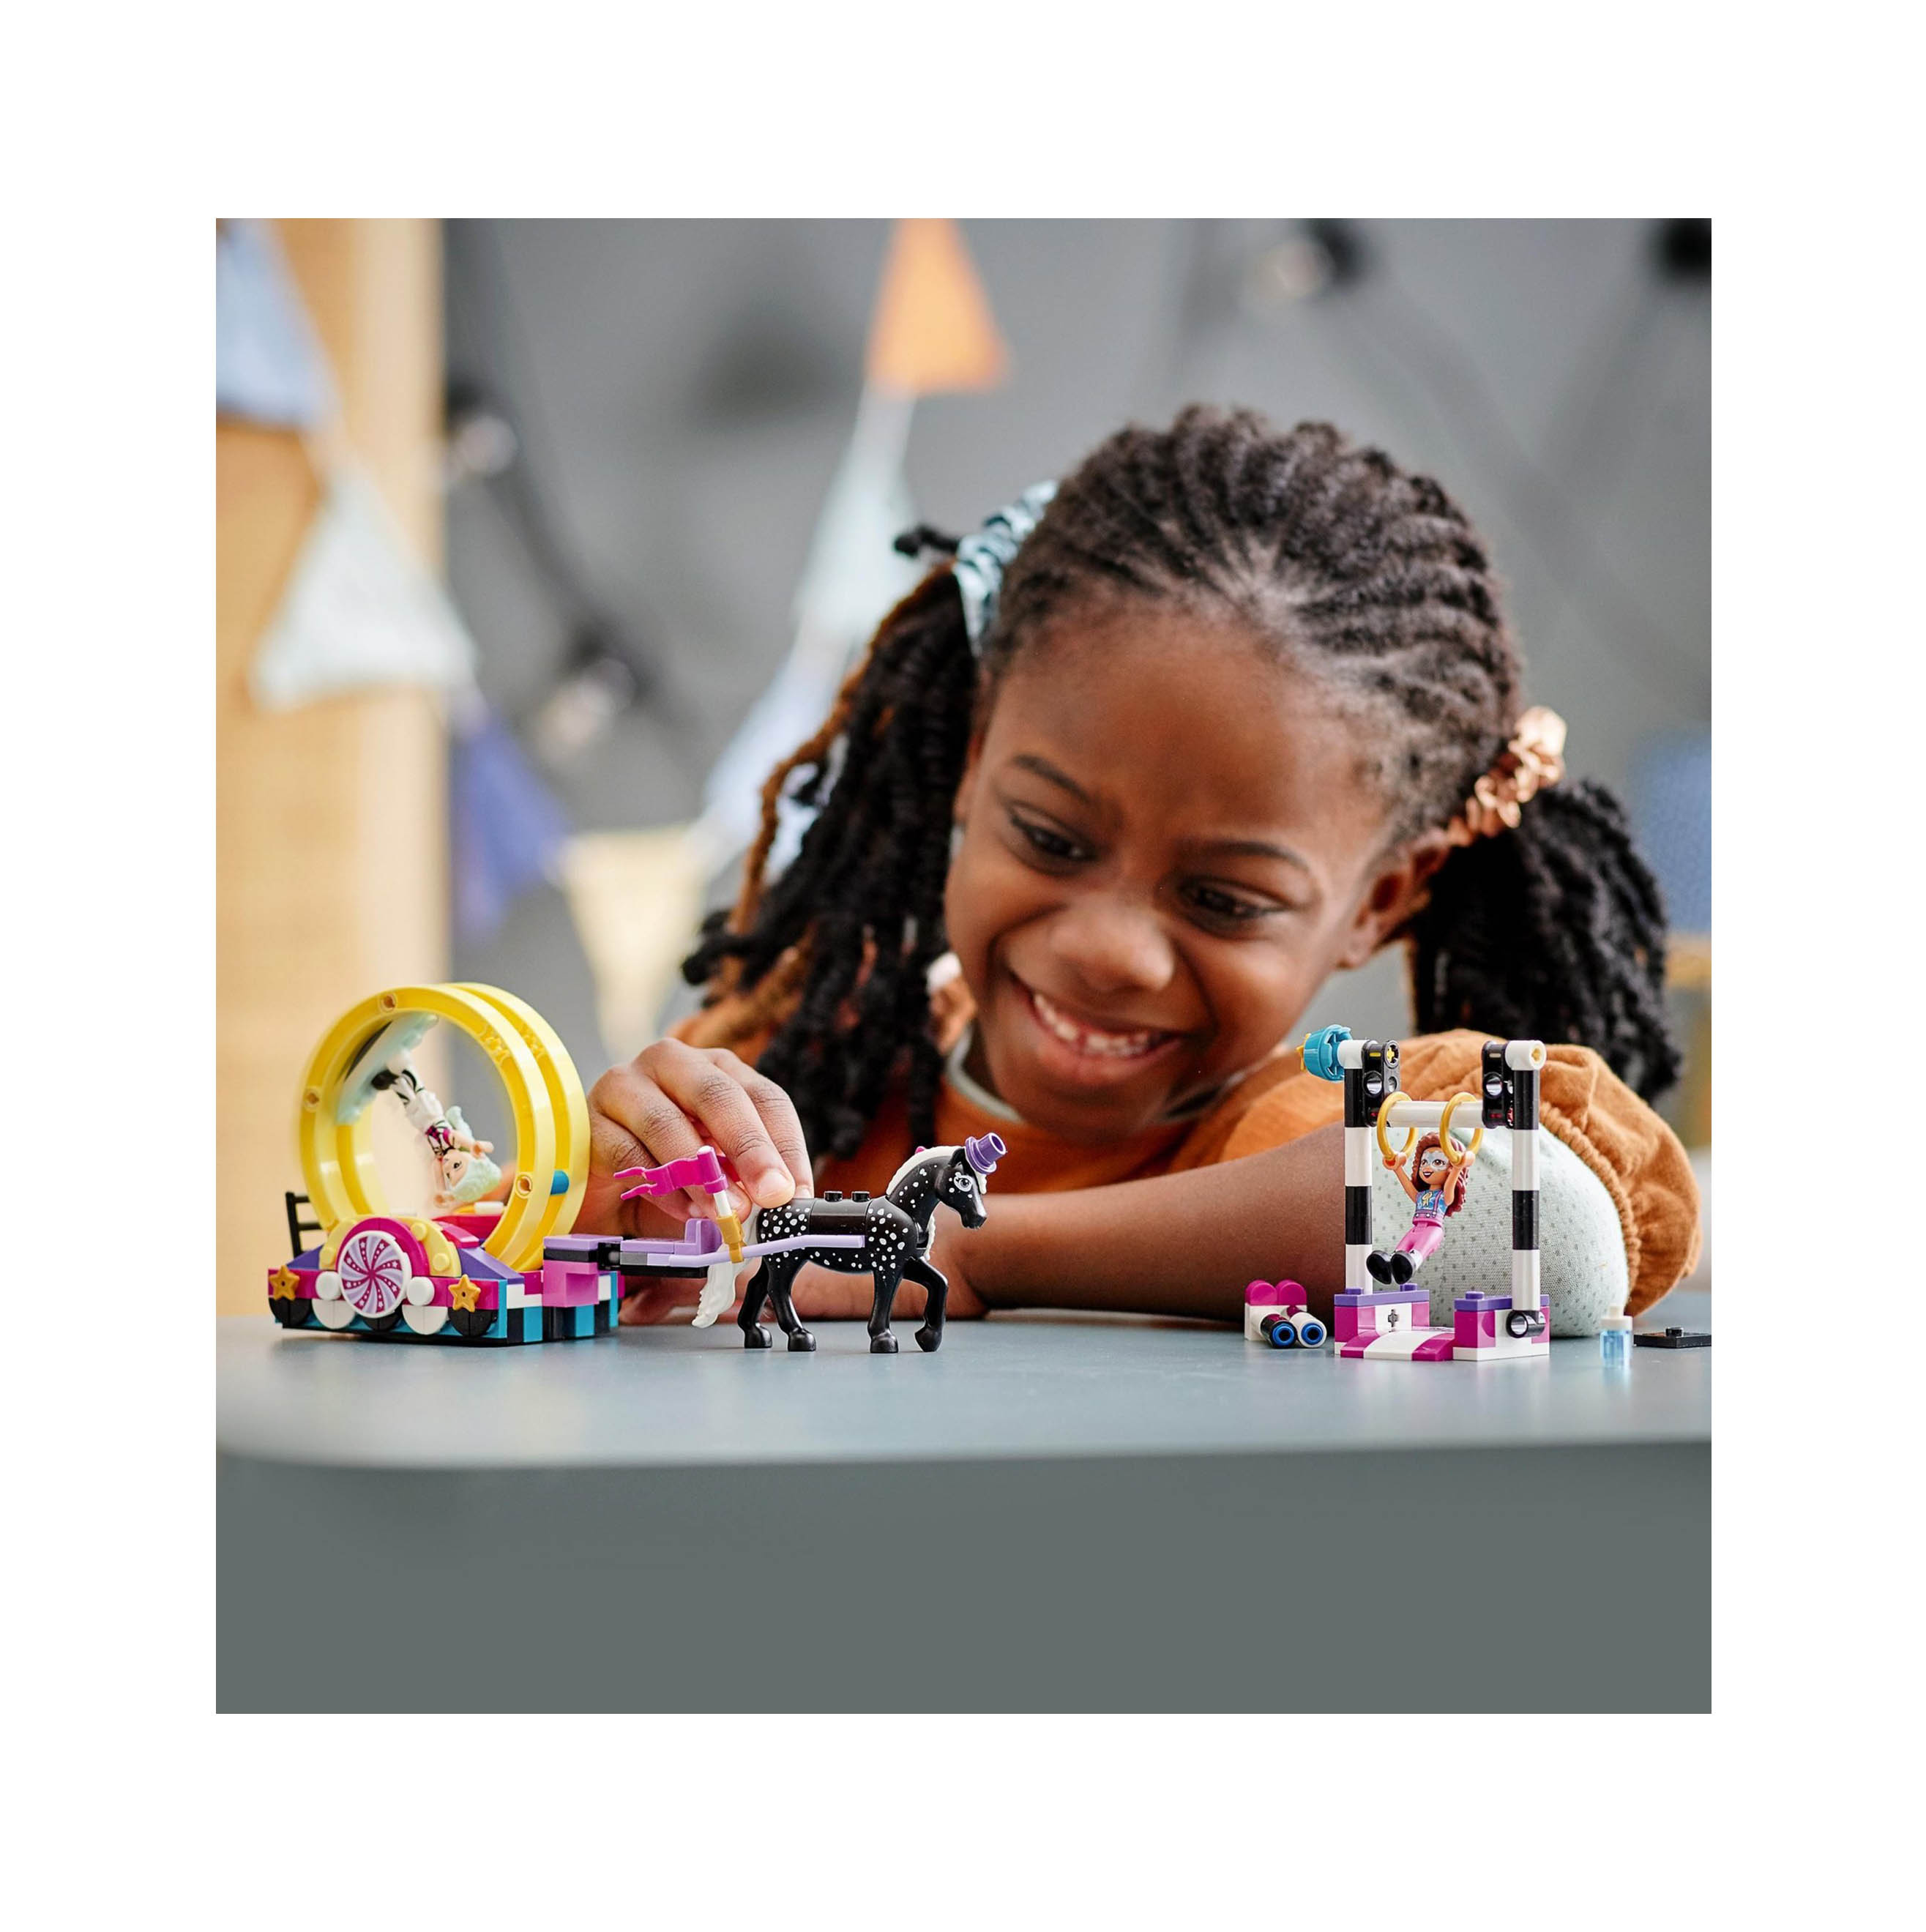 LEGO Friends Acrobazie Magiche, Set di Costruzioni per Bambini di 6 Anni con le 41686, , large